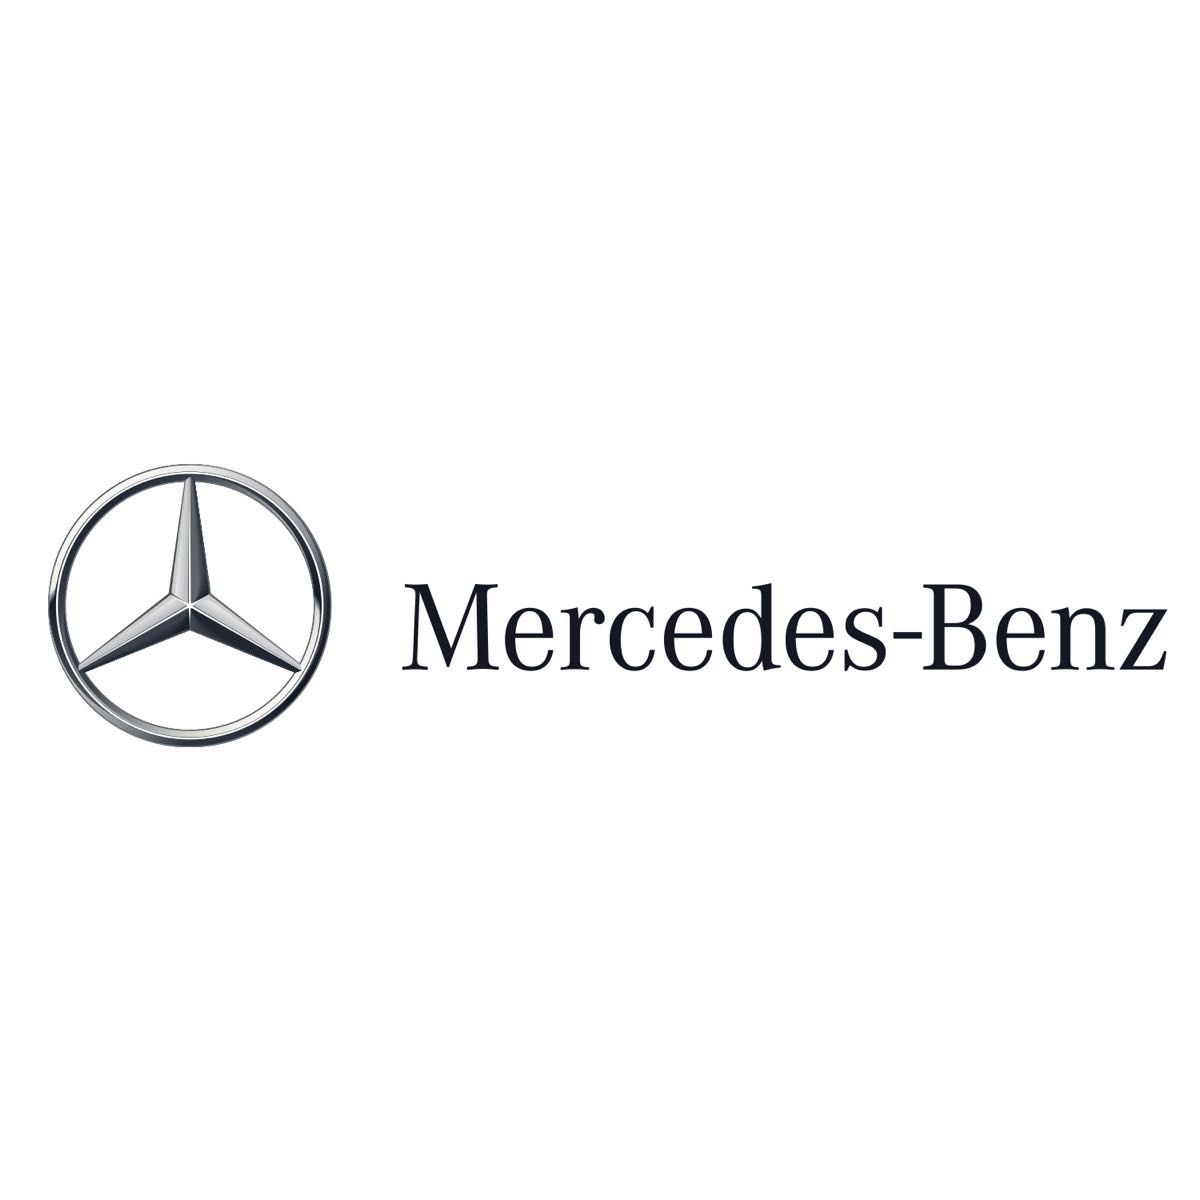 AMG メルセデスベンツ Mercedes Benz ランヤード ネックストラップ PETRONAS ペトロナス 黒 ブラック n